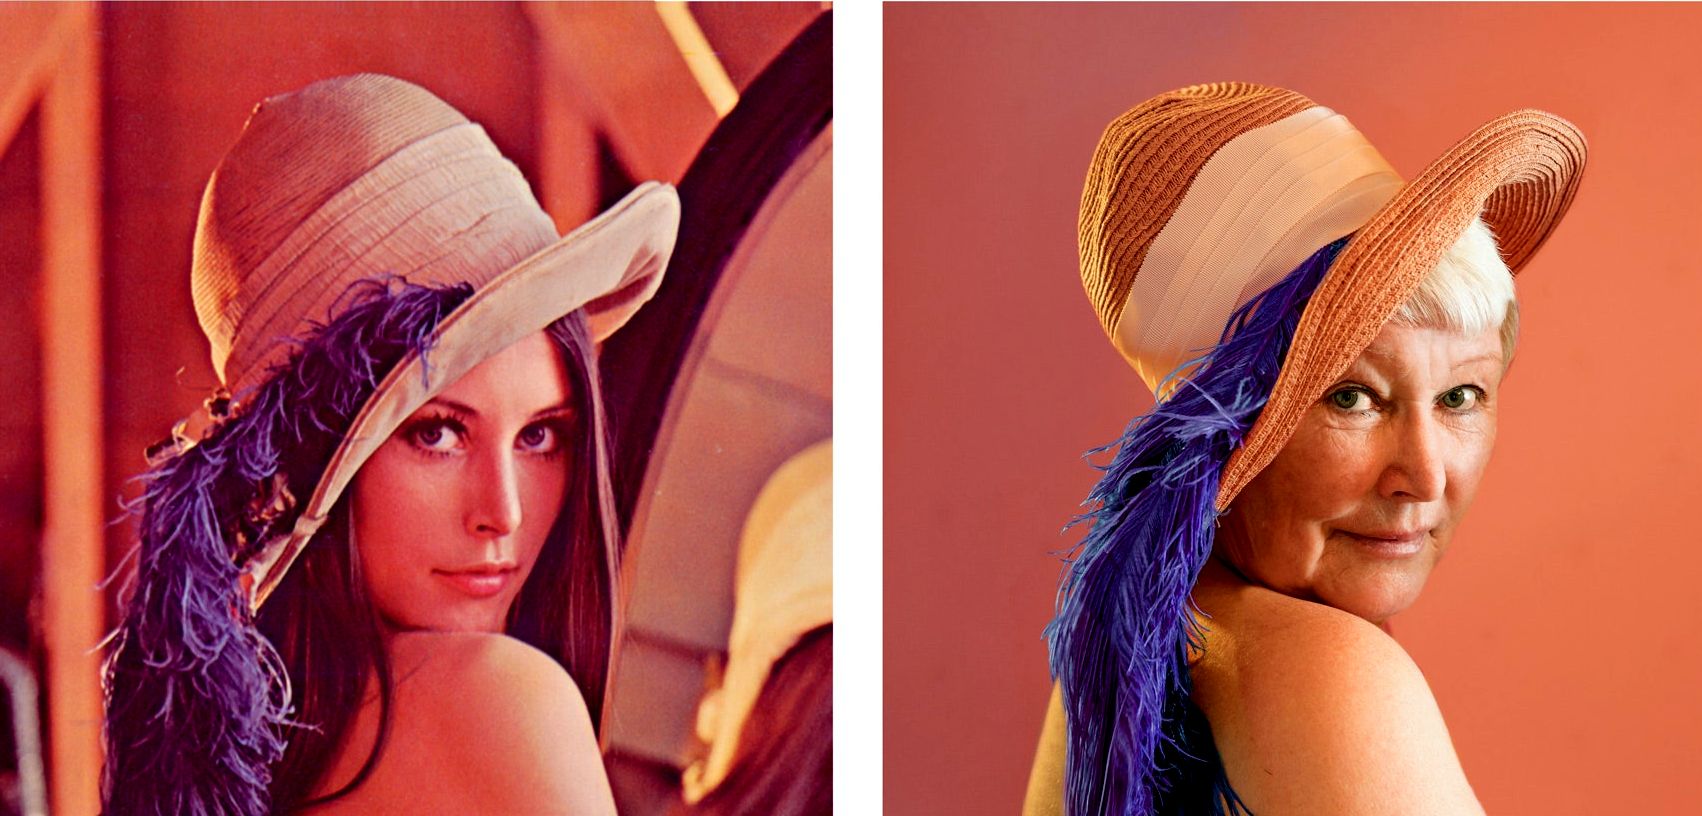 Imatge de Lena posant per Playboy amb barret i ploma de 1972. Mateixa imatge recreada amb Lena el 2019.